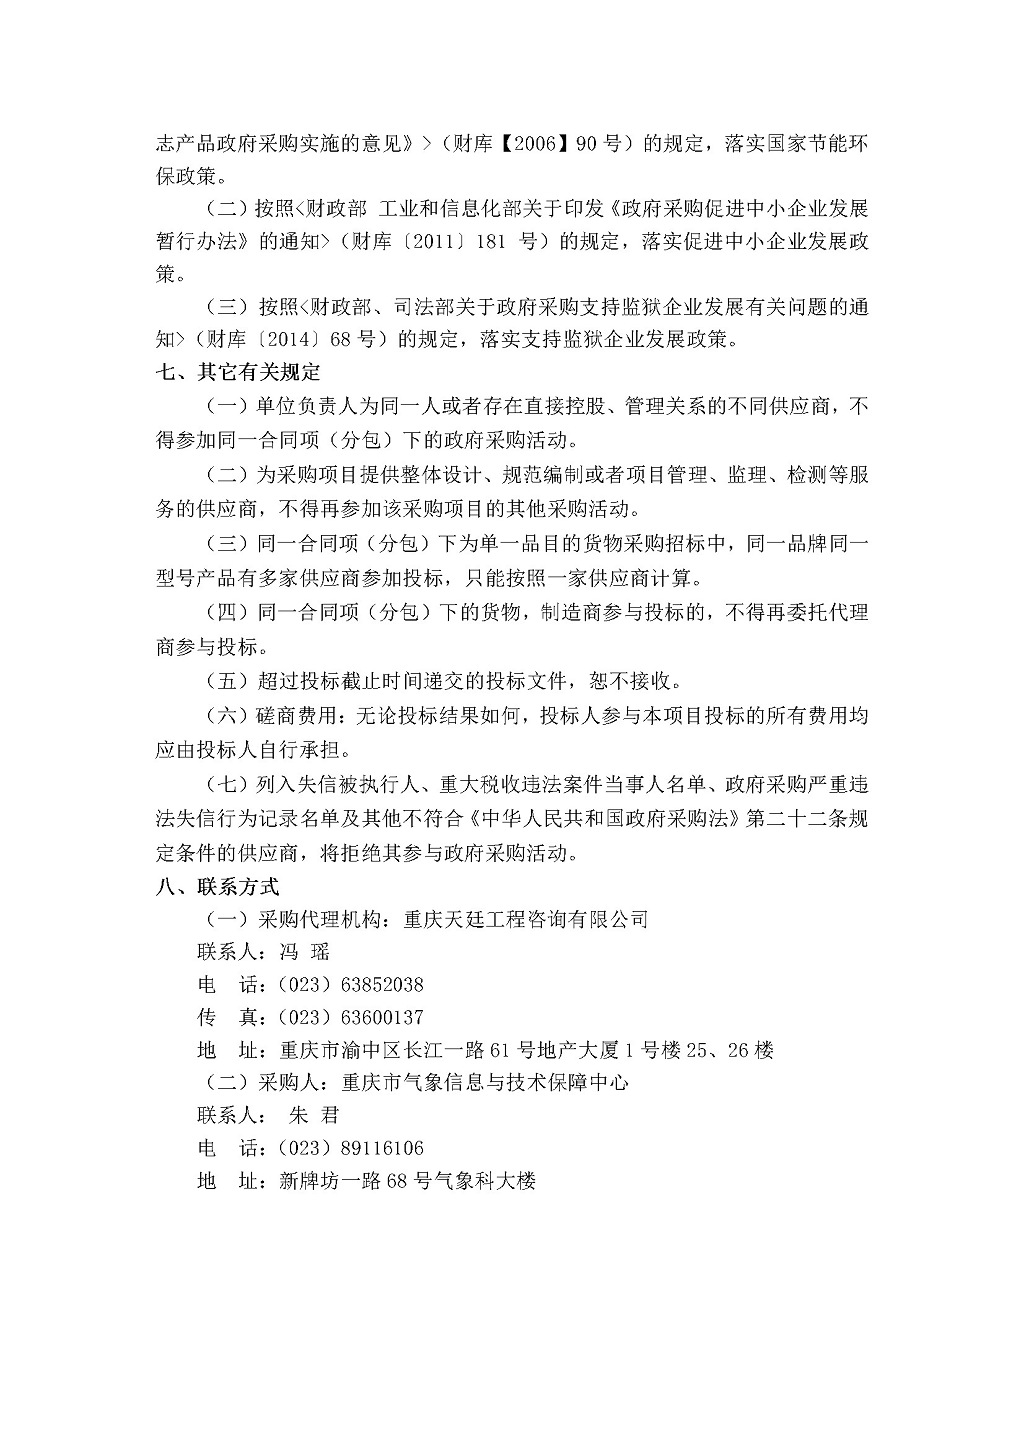 20180802c重庆市气象信息与技术保障中心数据中心机房消防系统维保服务采购邀请书-苏怀波3.jpg